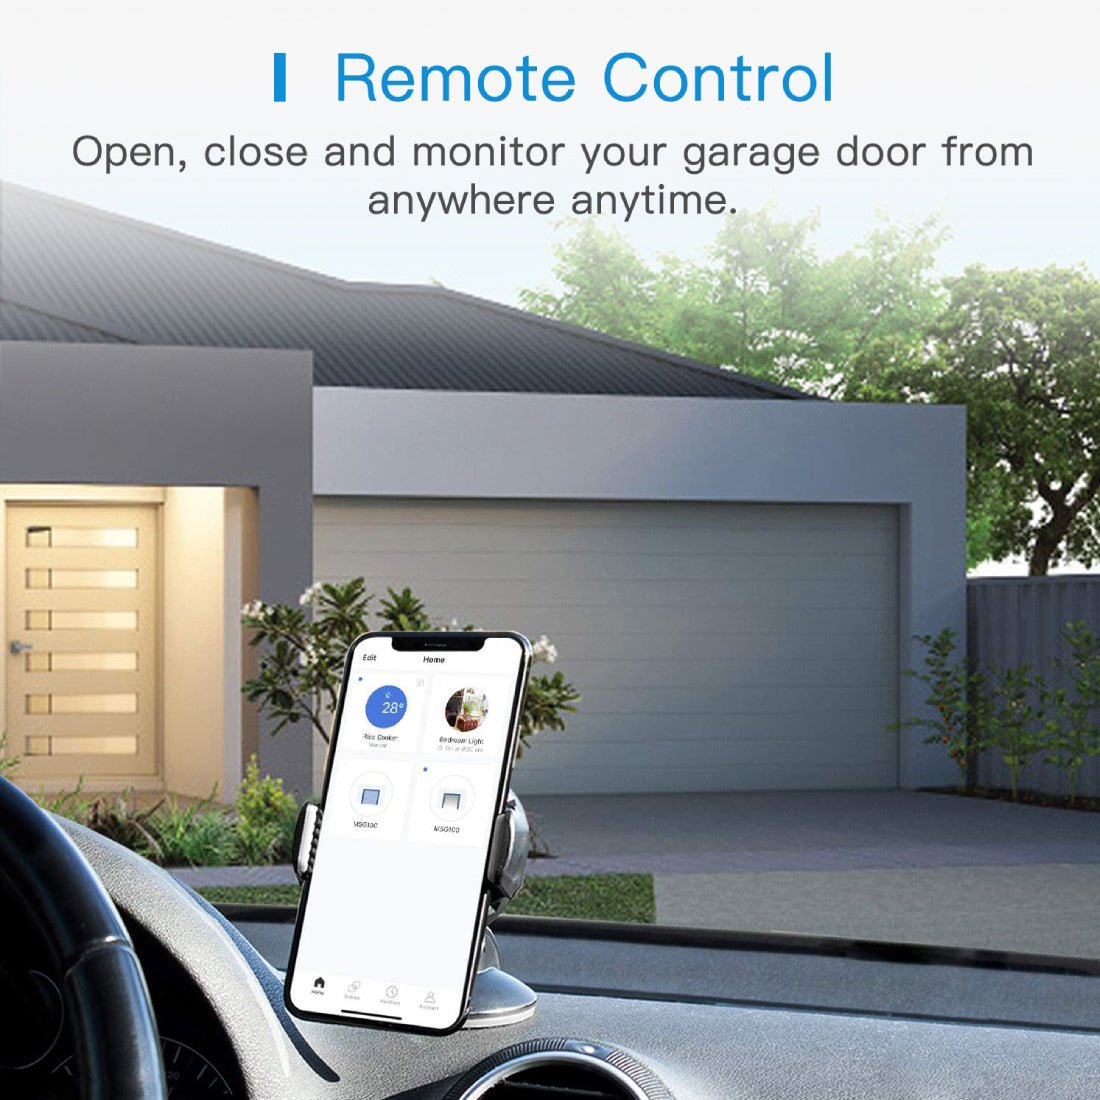 Meross Smart Wi-Fi Garage Door Opener - Up to 3 Single Doors - أداة تحكم - Store 974 | ستور ٩٧٤